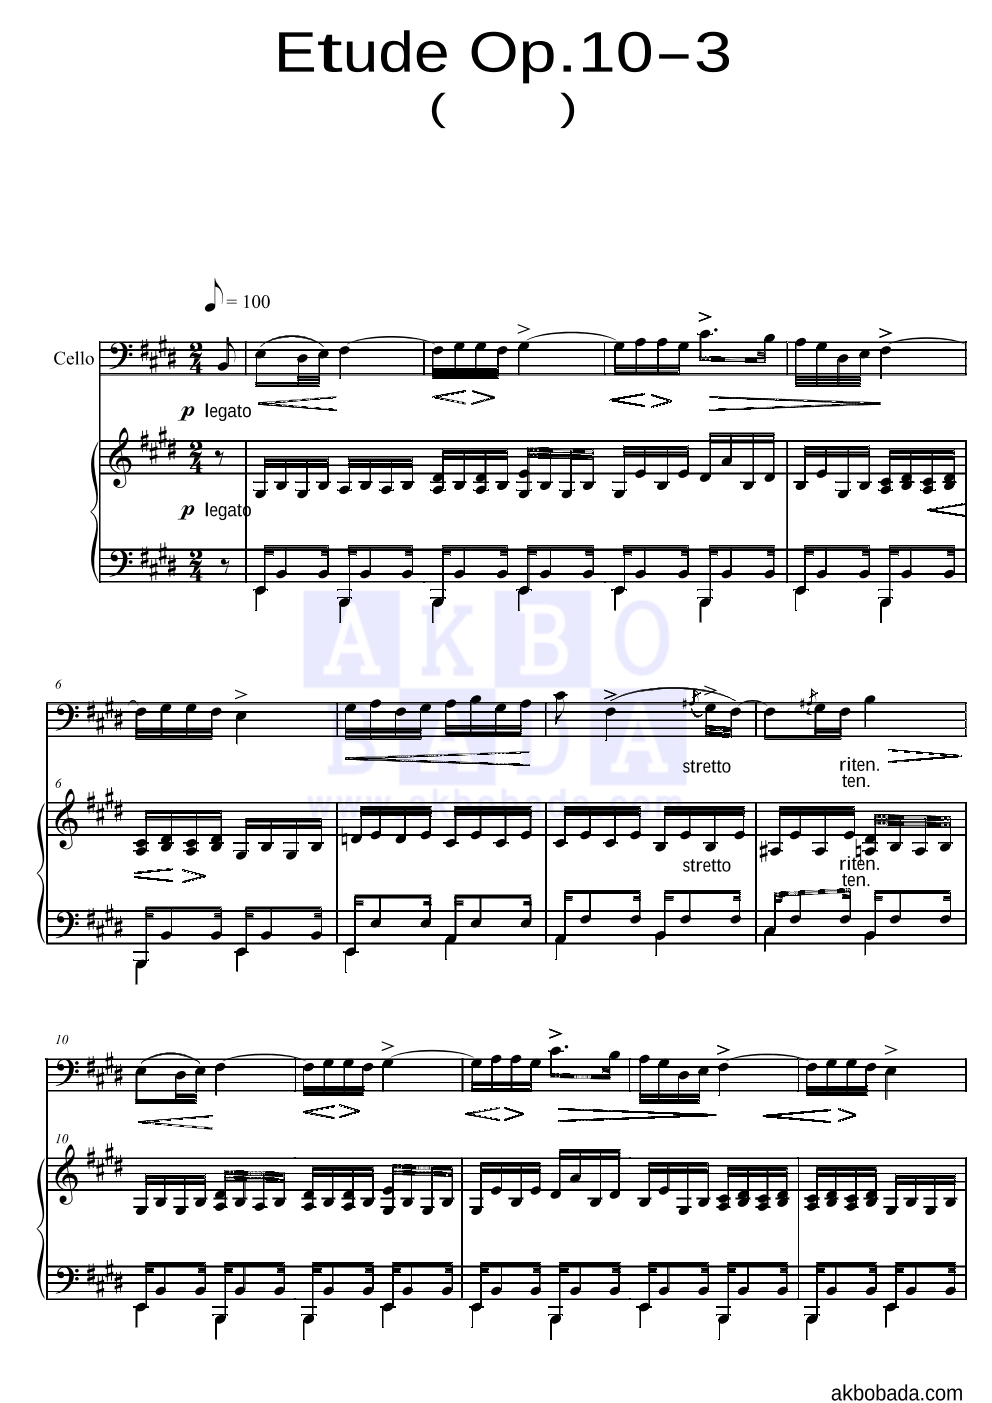 쇼팽 - Etude Op.10 No.3(이별곡) 첼로&피아노 악보 